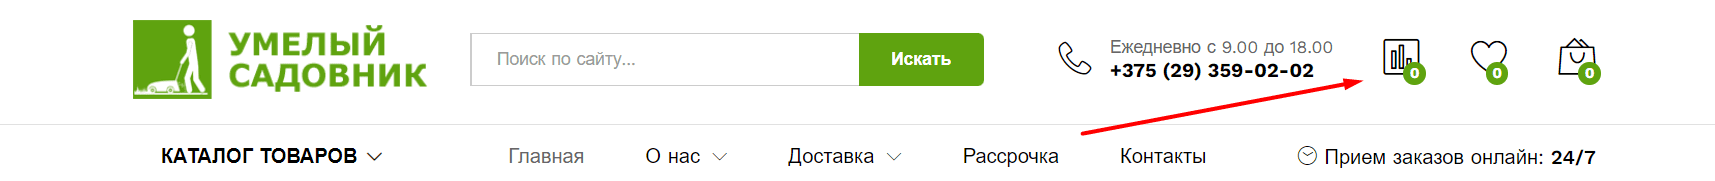 Интернет-магазин Умелый Садовник (umsad.by) - официальный сайт